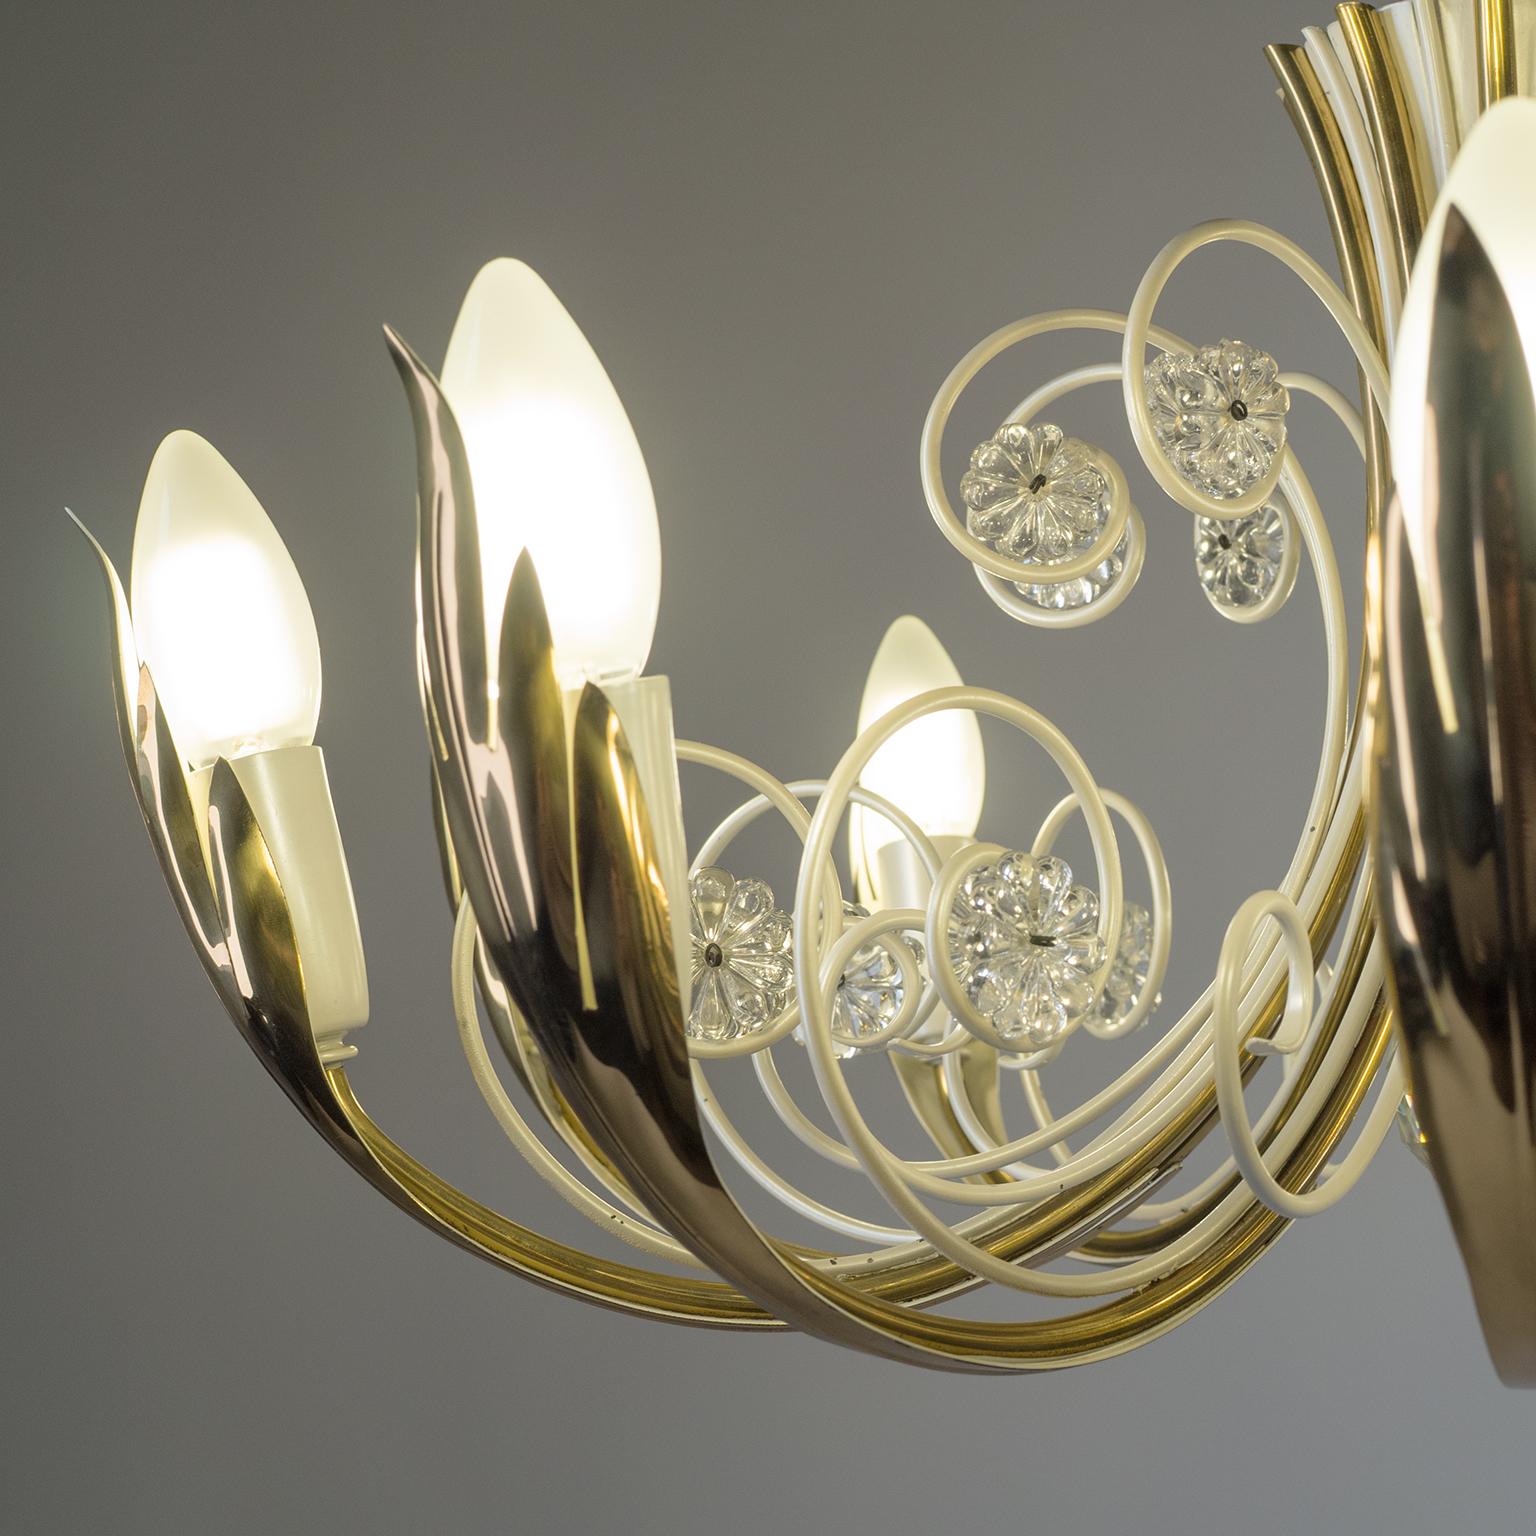 Mid-20th Century Brass and Glass Ceiling Light, 1960s, Vereinigte Werkstätten For Sale